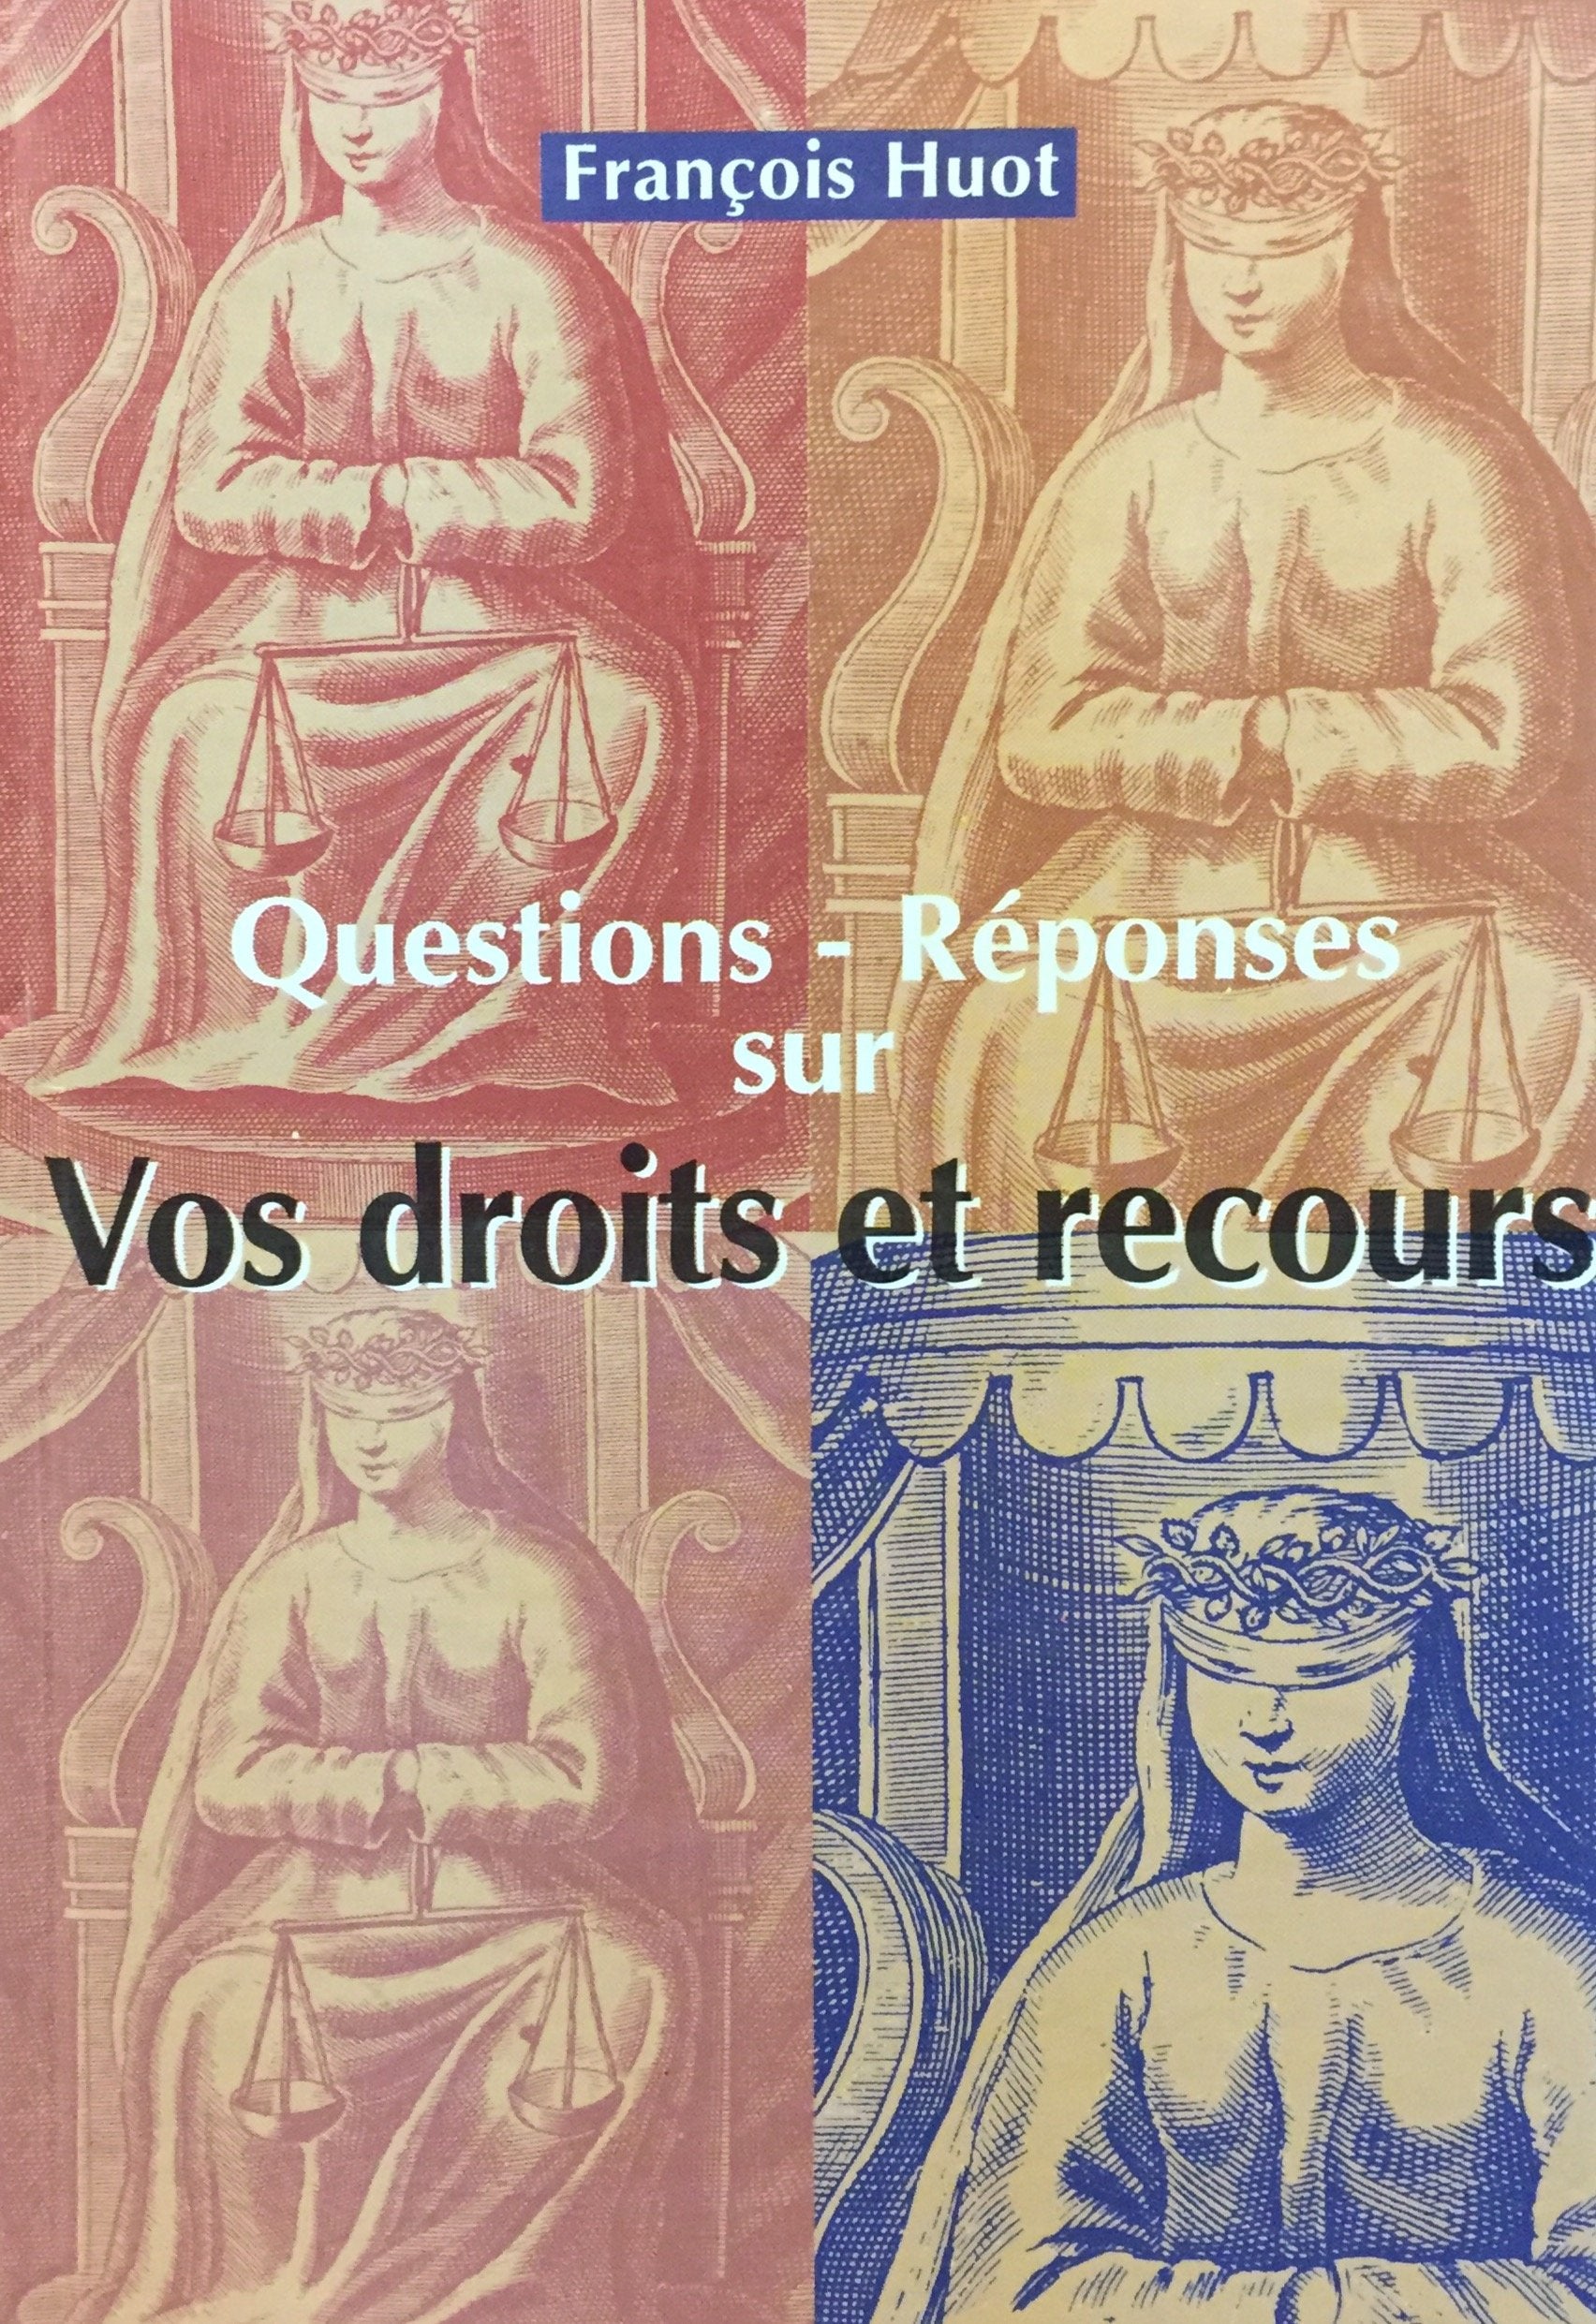 Livre ISBN 2894301510 Questions-Réponses sur vos droits et recours (François Huot)